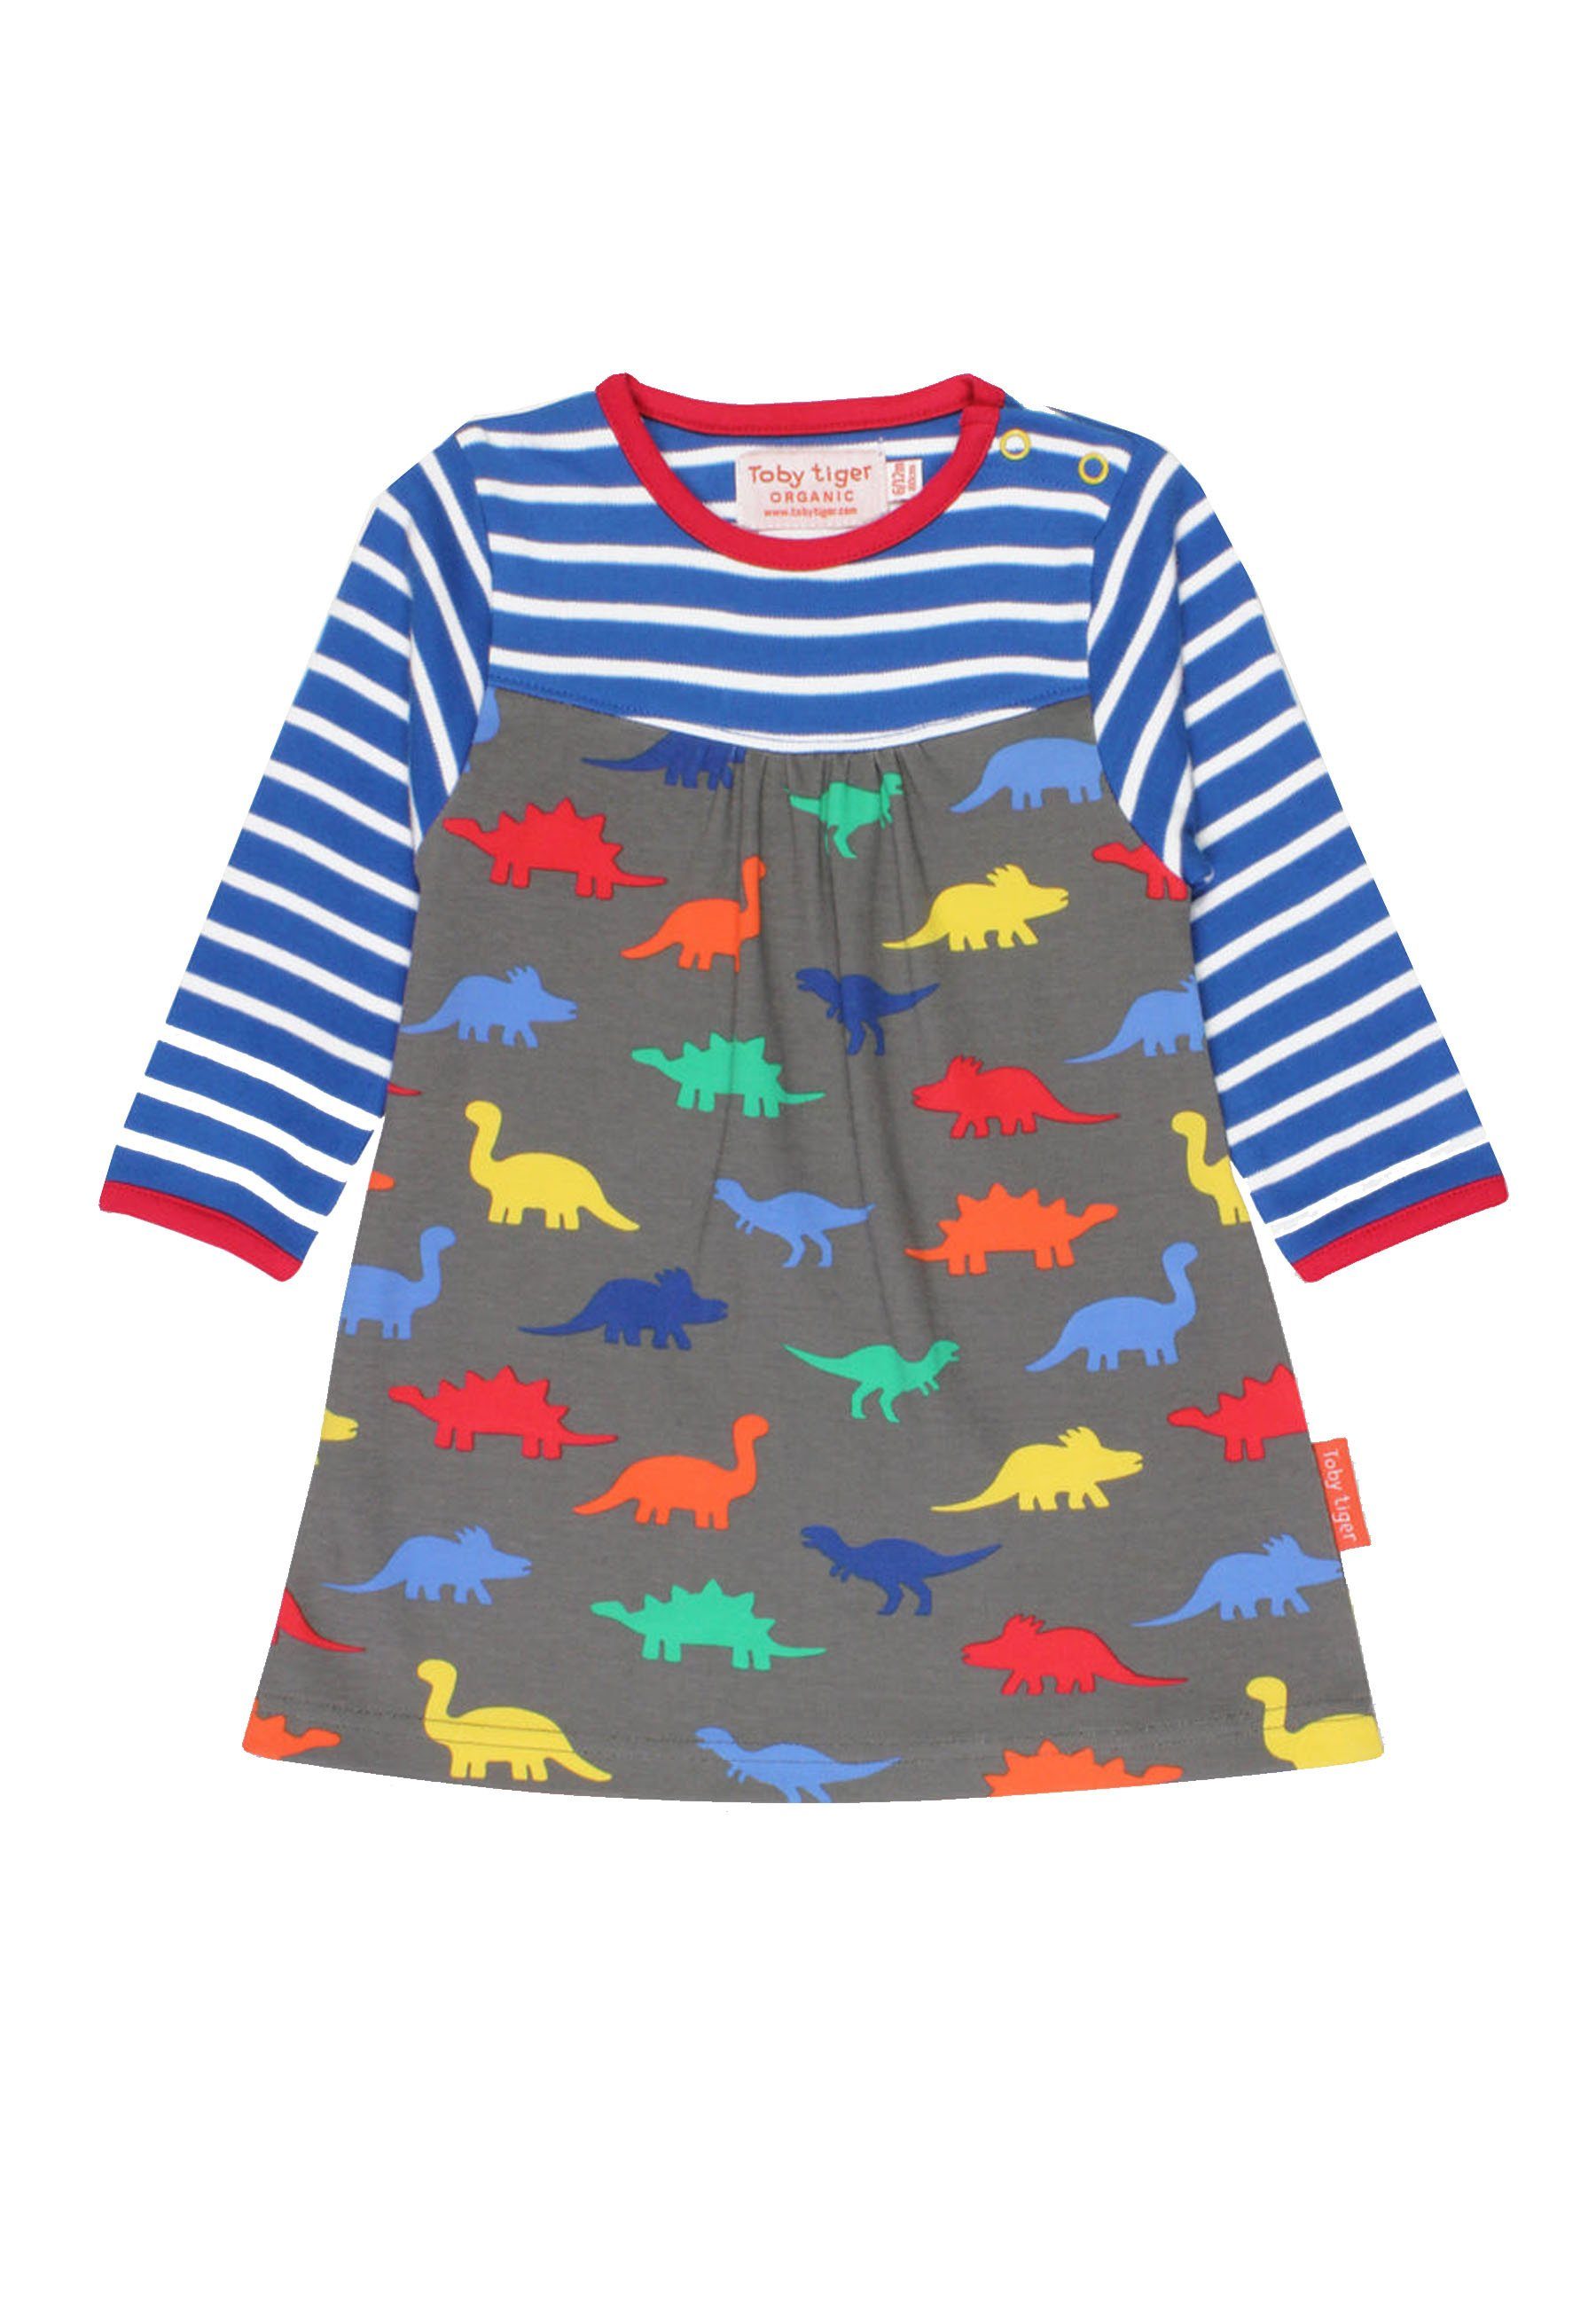 Toby Tiger Shirtkleid Kleid mit Dinosaurier und Streifen Print